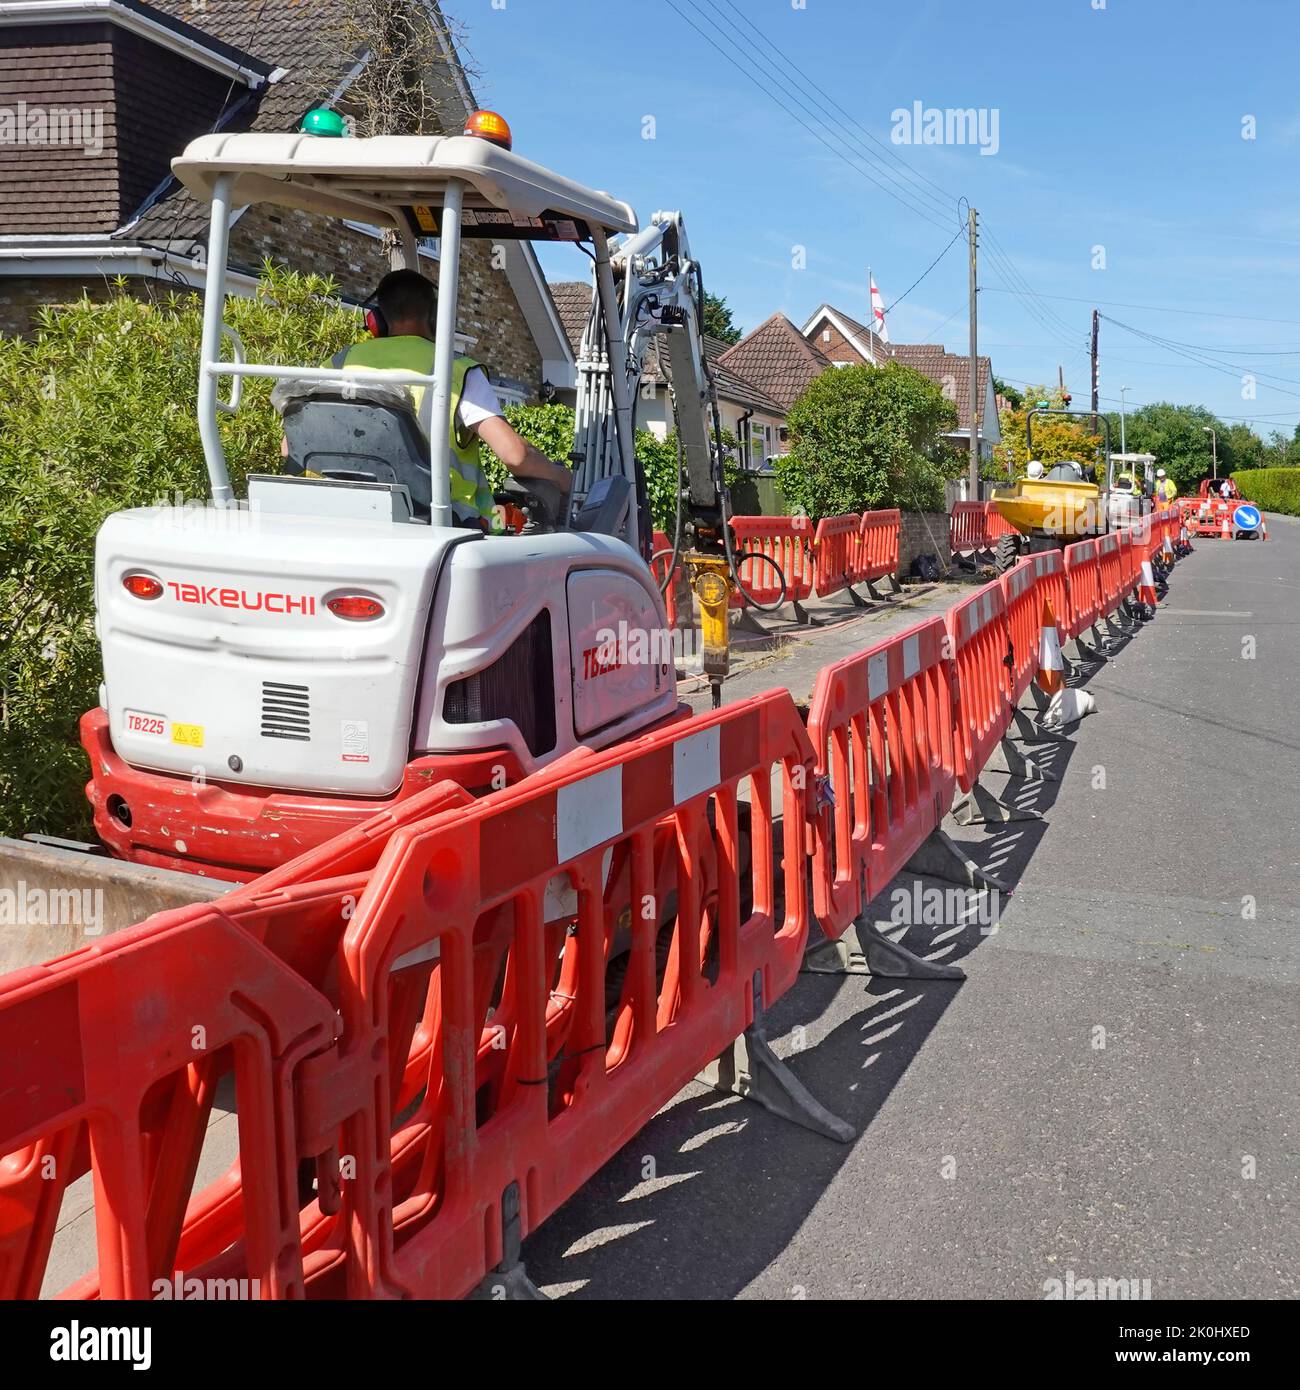 Red interlocking carretera obras barreras de seguridad de plástico que restringen el acceso de los propietarios de viviendas de cruce mini excavadora excavar zanja de banda ancha en pavimento Reino Unido Foto de stock